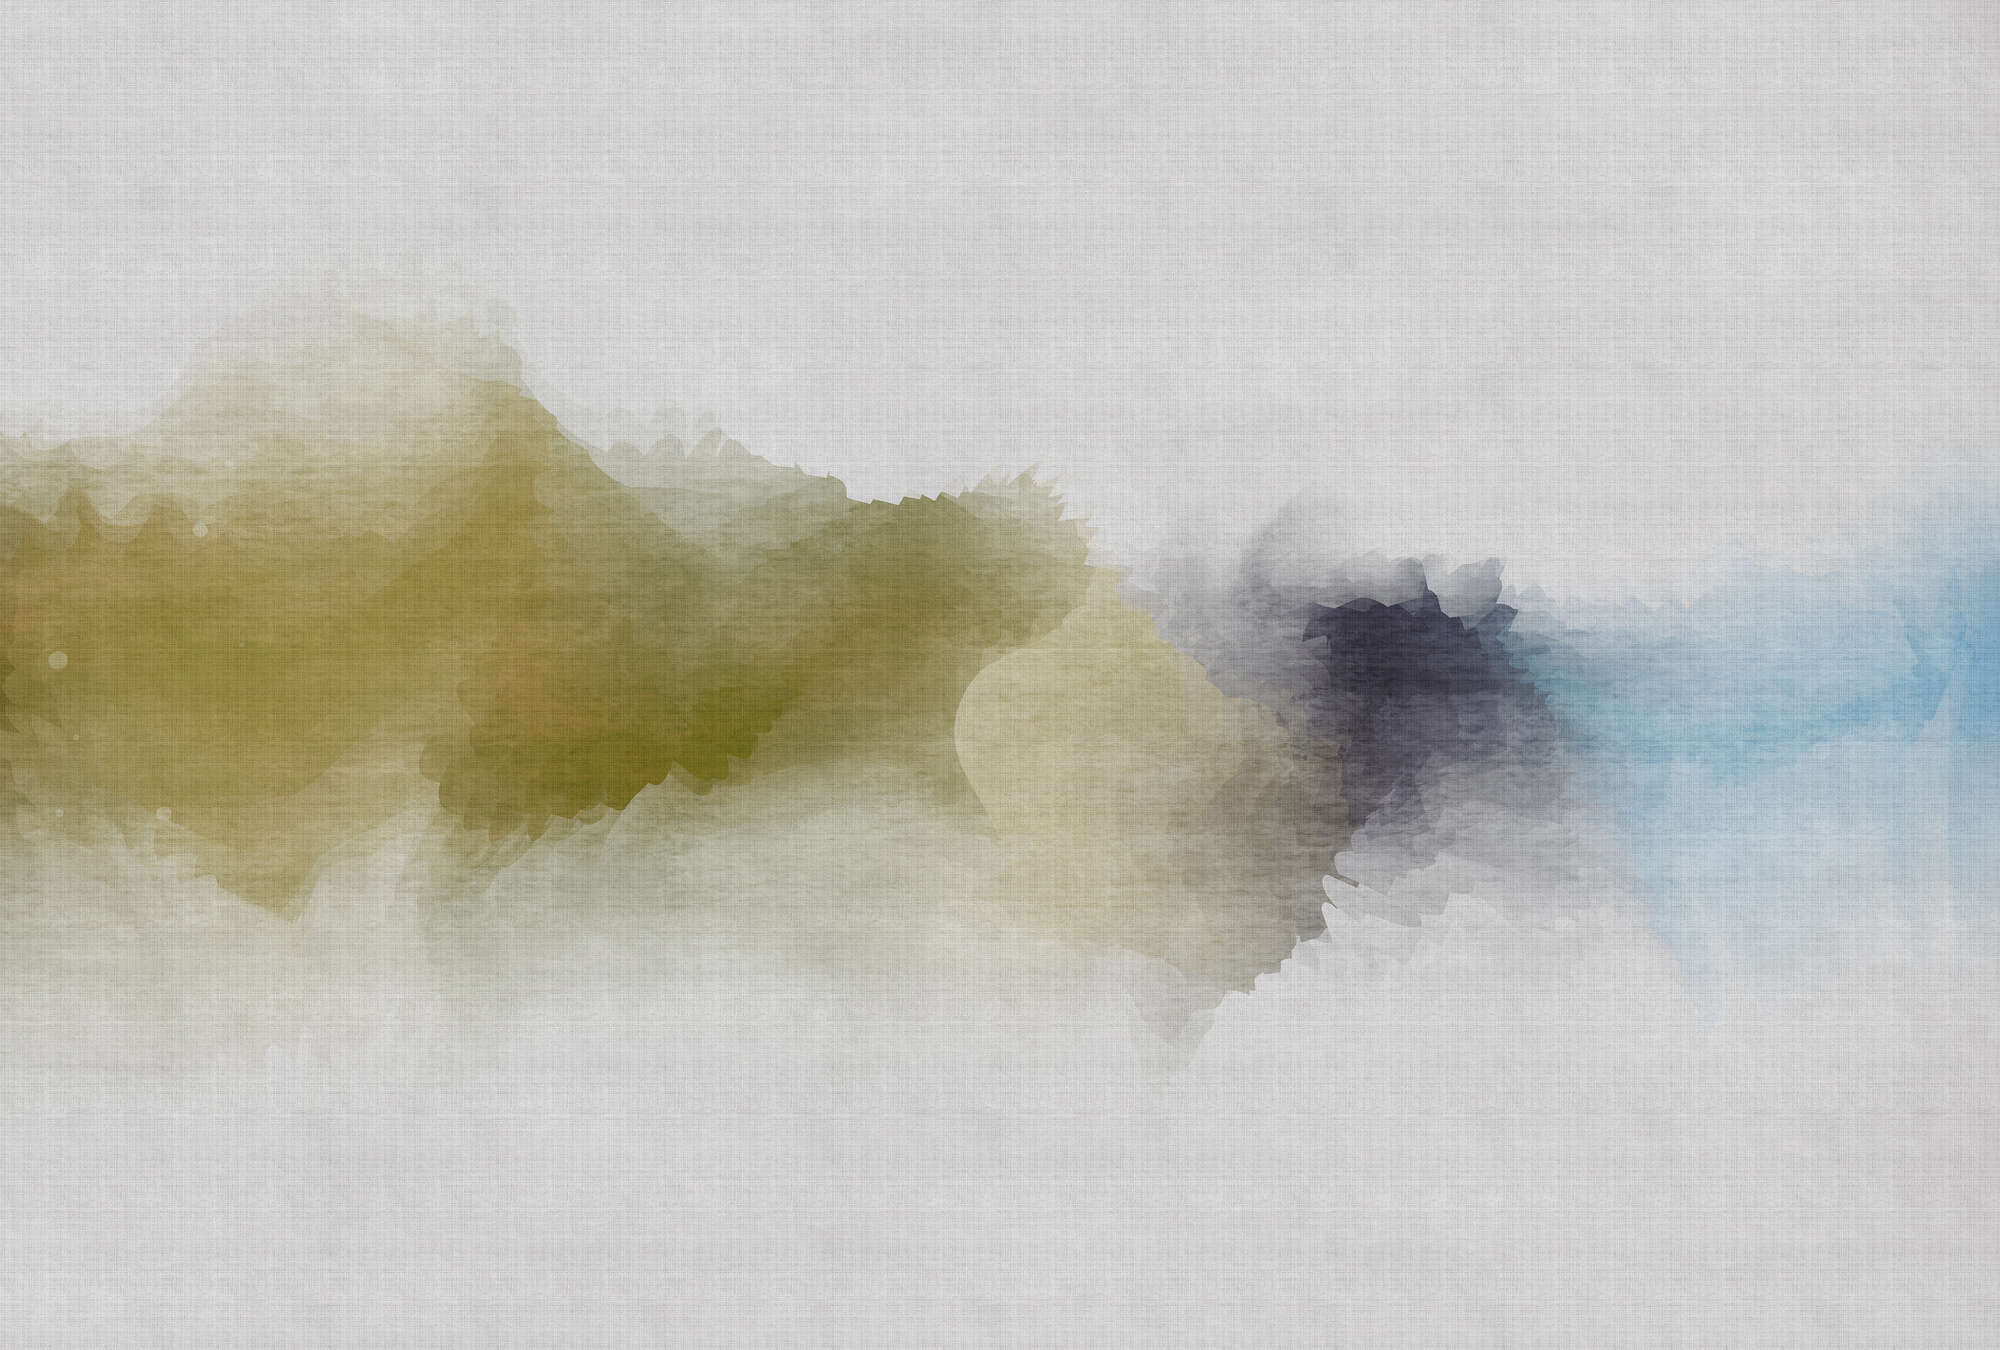             Daydream 3 - Papier peint motif aquarelle nuageux - À structure lin naturel - Bleu, jaune | Nacré intissé lisse
        